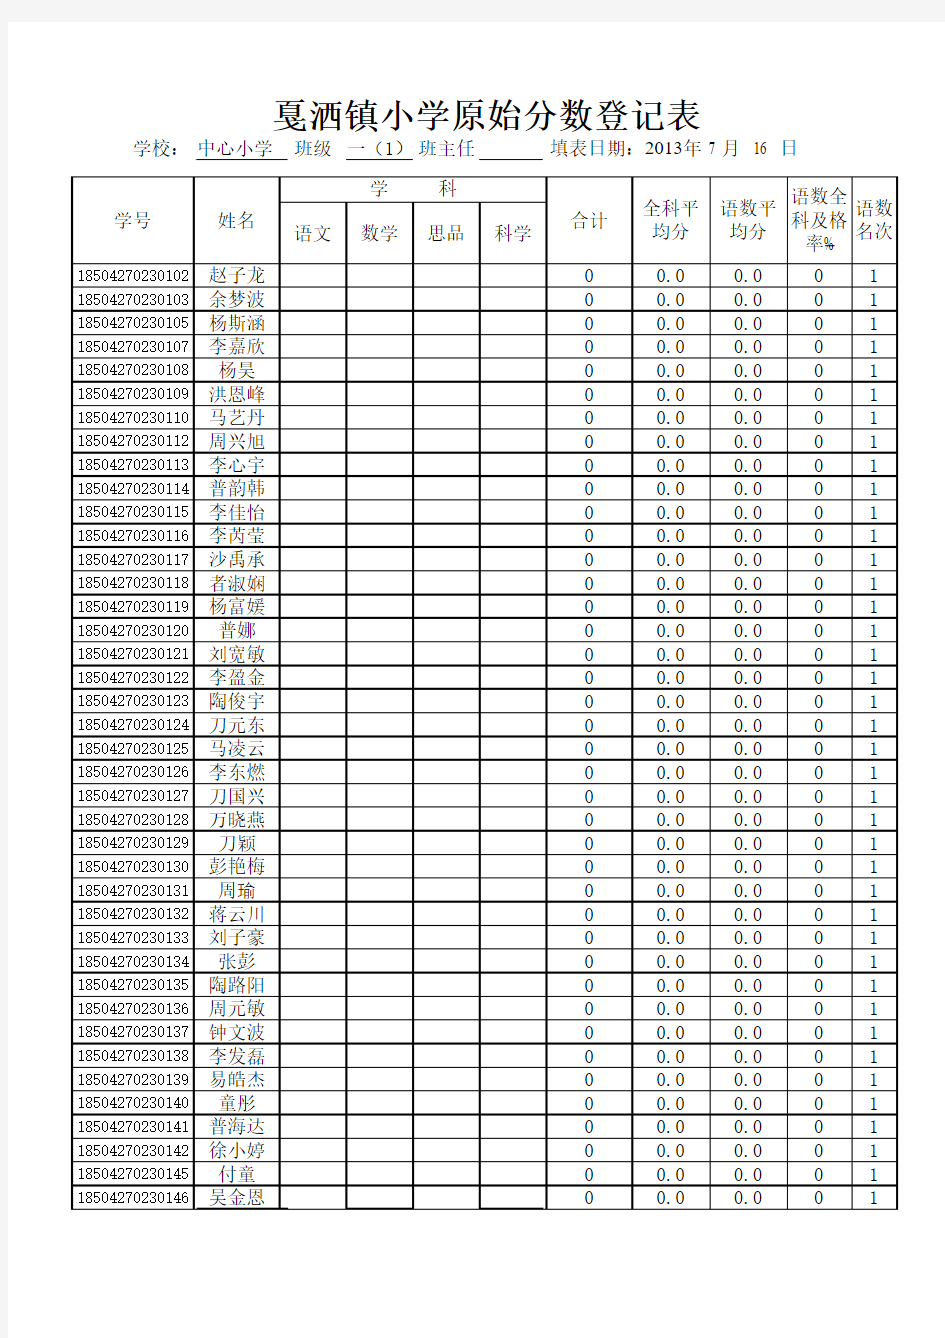 副本戛洒镇小学2012至2013学年下学期各班级成绩表(登分表)